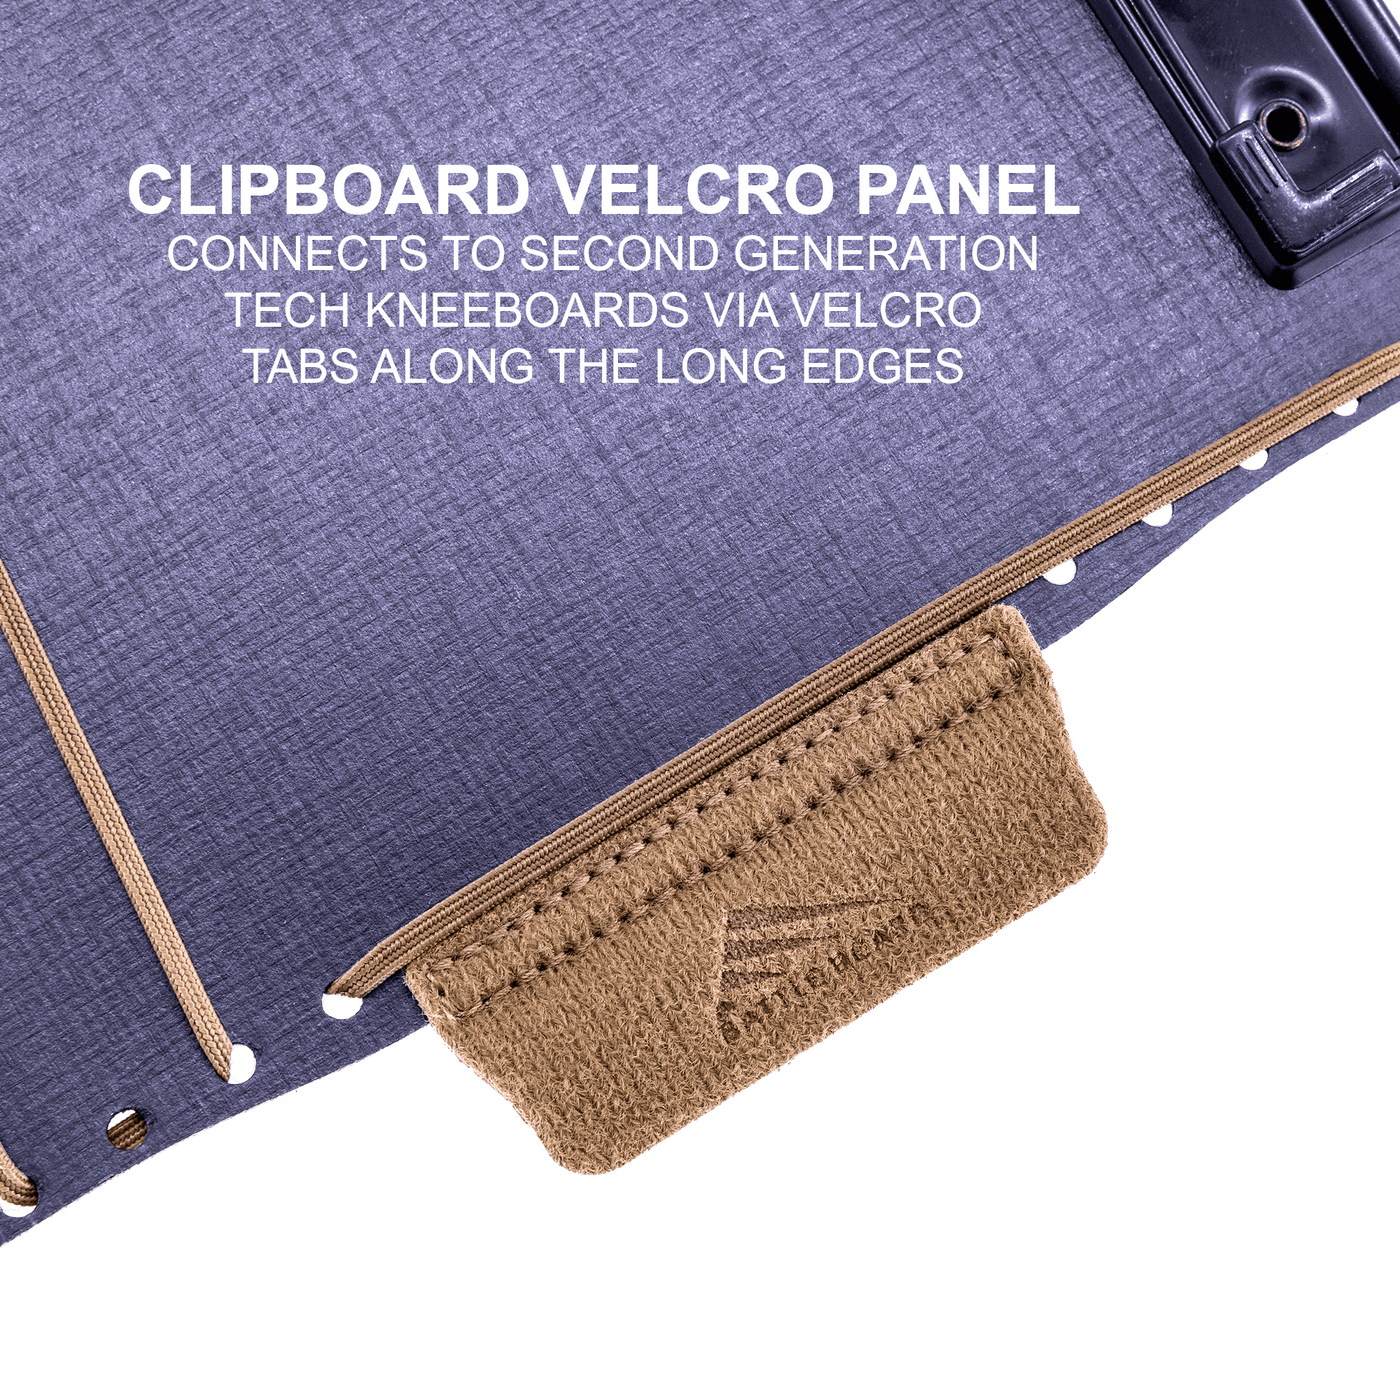 Kneeboard - iPad Mini Edition (UPDATED V2)